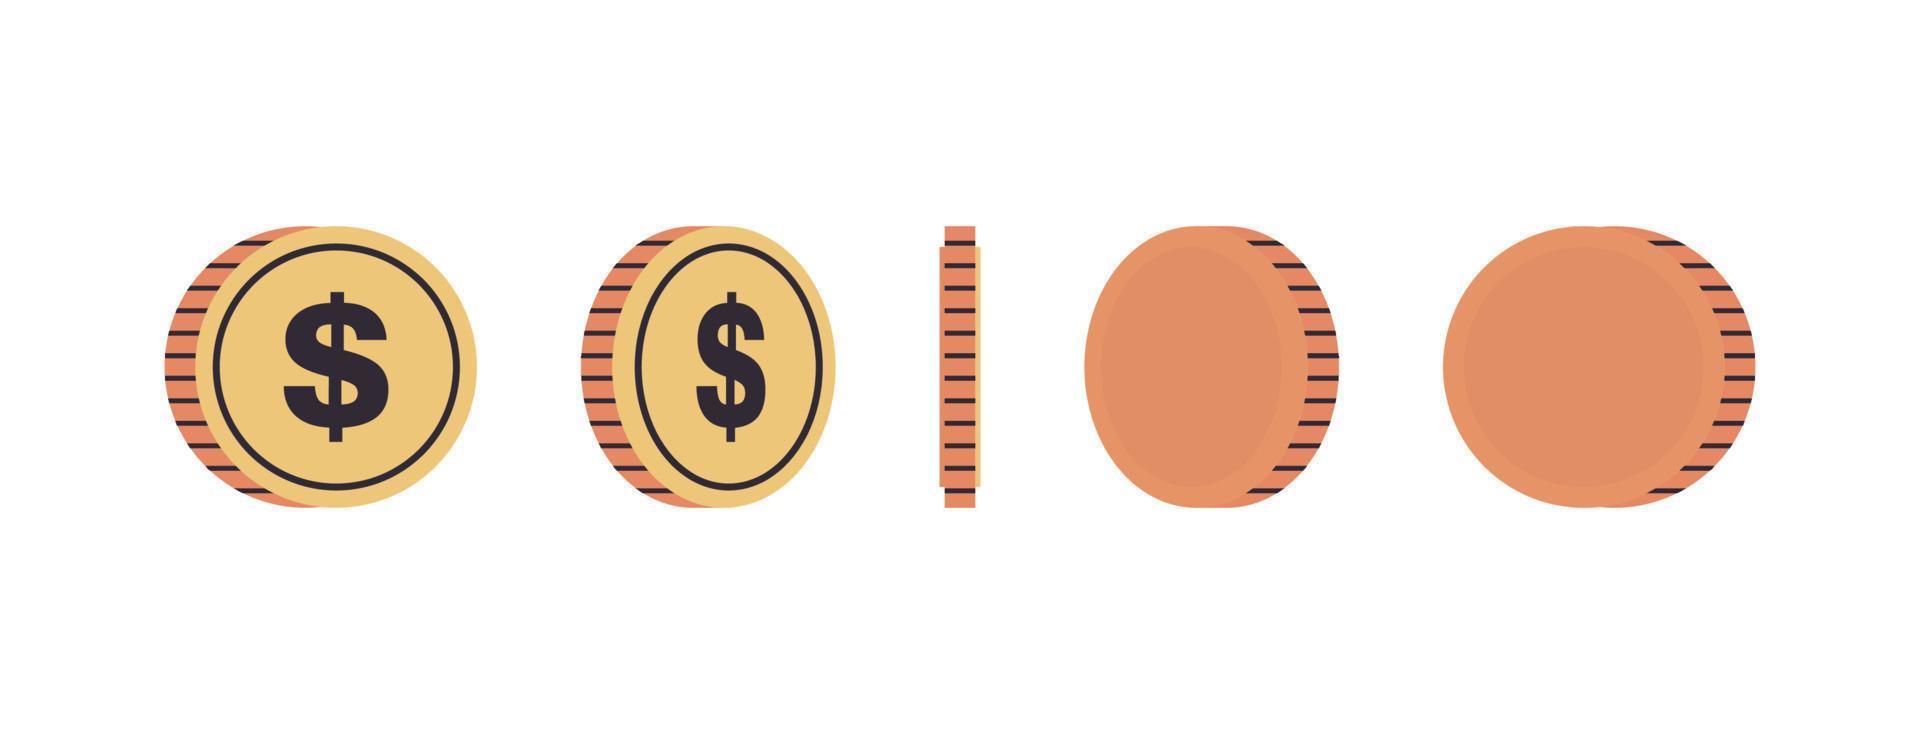 Internationale valuta munten en goud munten Bij verschillend agles van omwenteling concept vol lengte vlak vector illustratie.